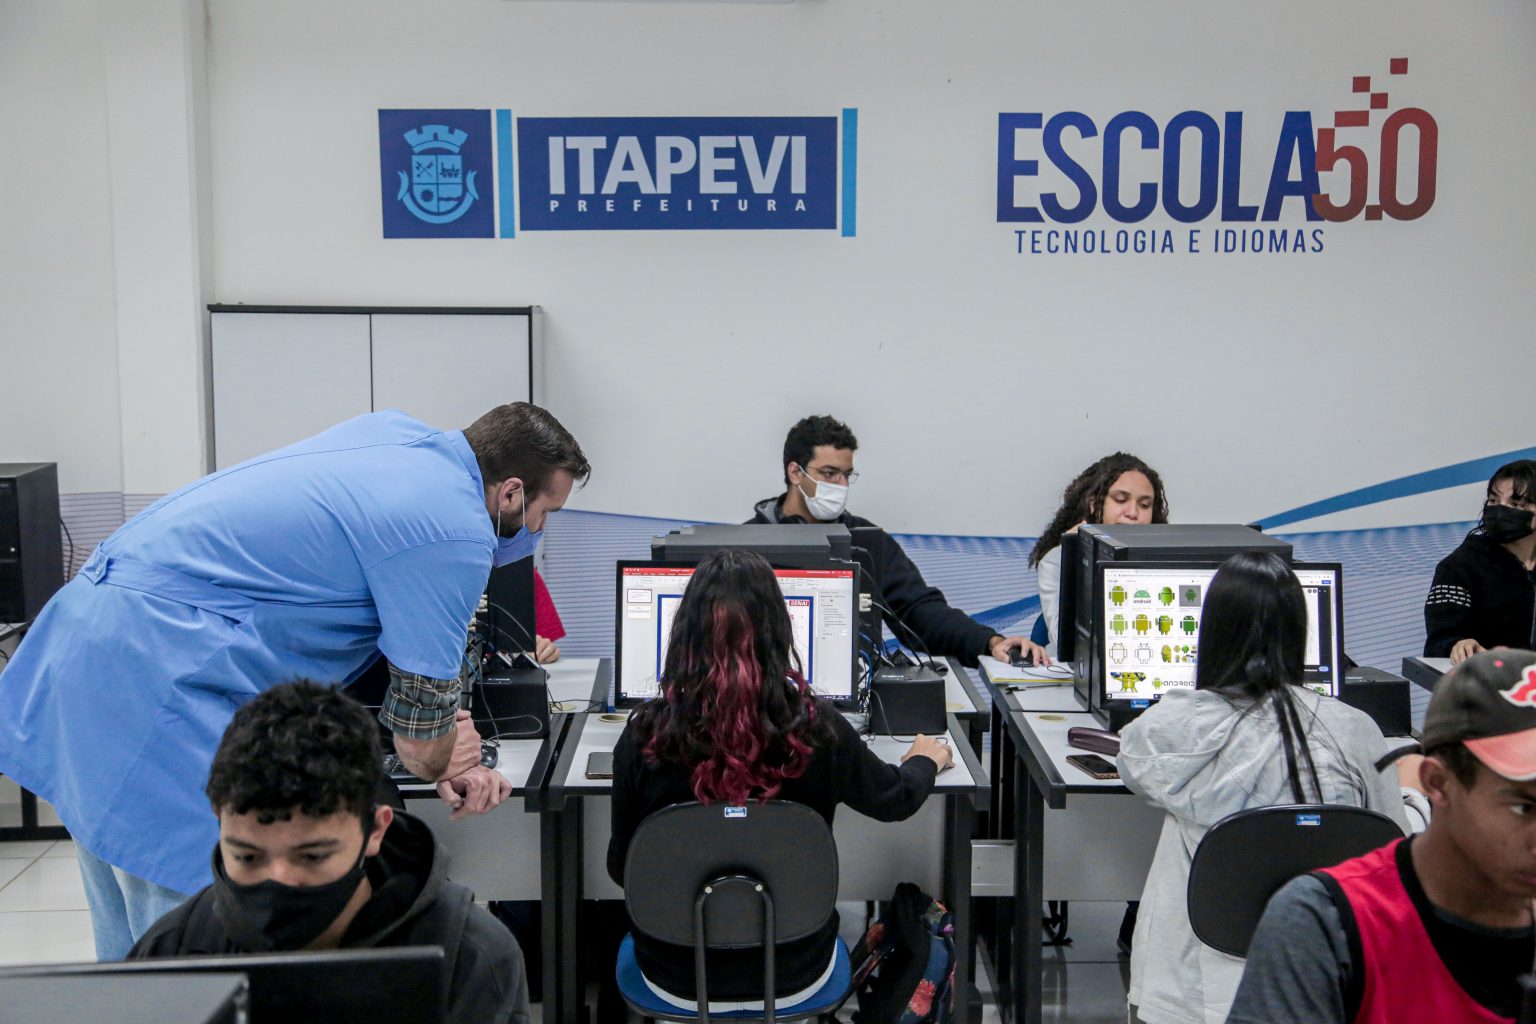 Escola 5.0 de tecnologia e idiomas está com 80 vagas abertas para cursos profissionalizantes